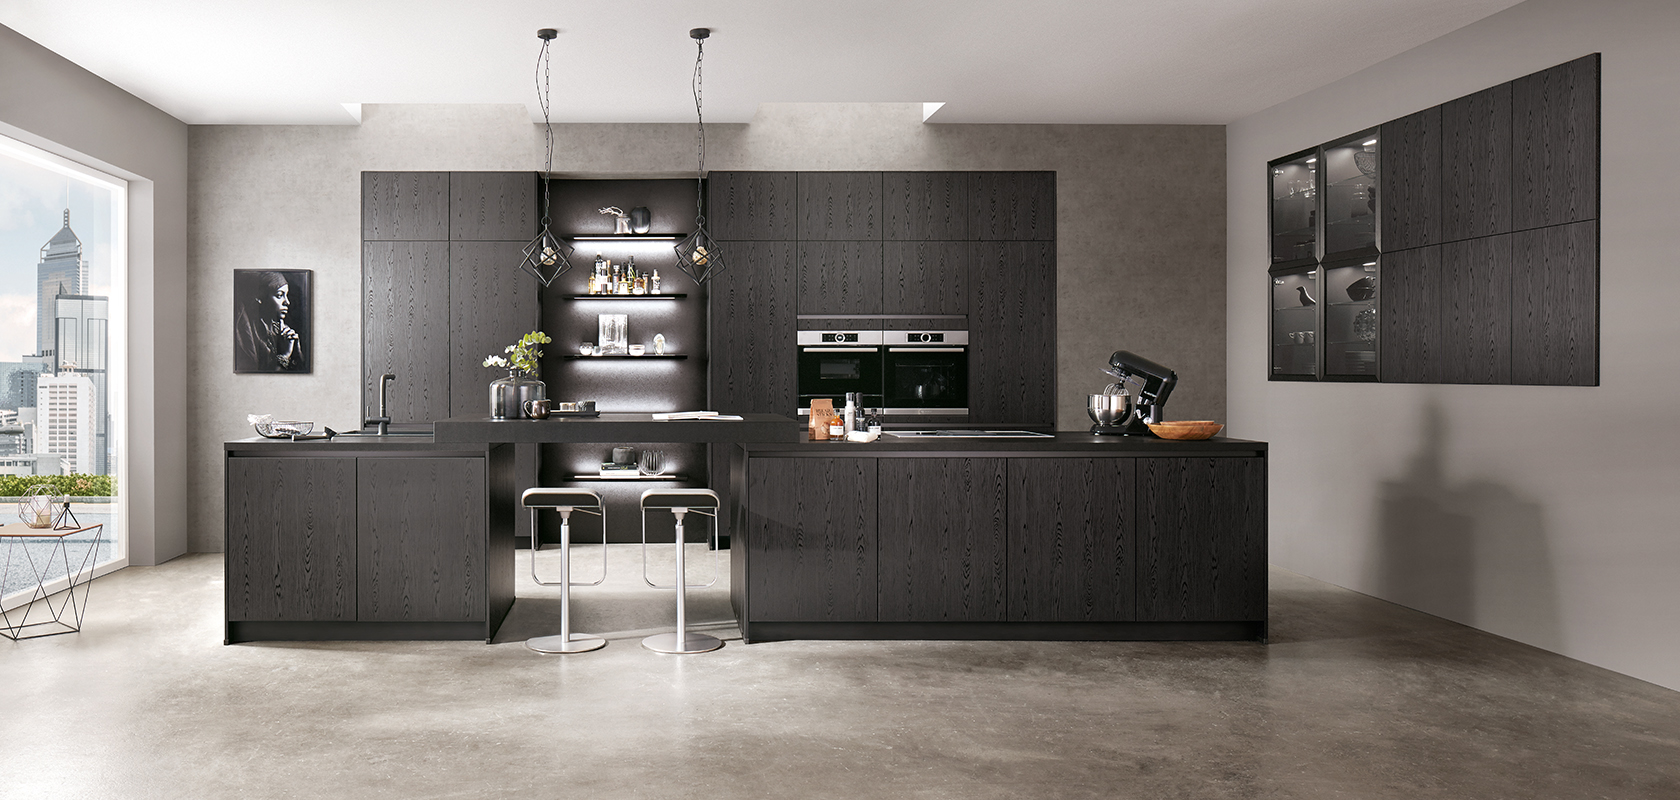 Moderní design kuchyně s elegantními černými skříňkami, nerezovými spotřebiči a centrálním ostrovem s barovými židlemi na pozadí šedých betonových textur.